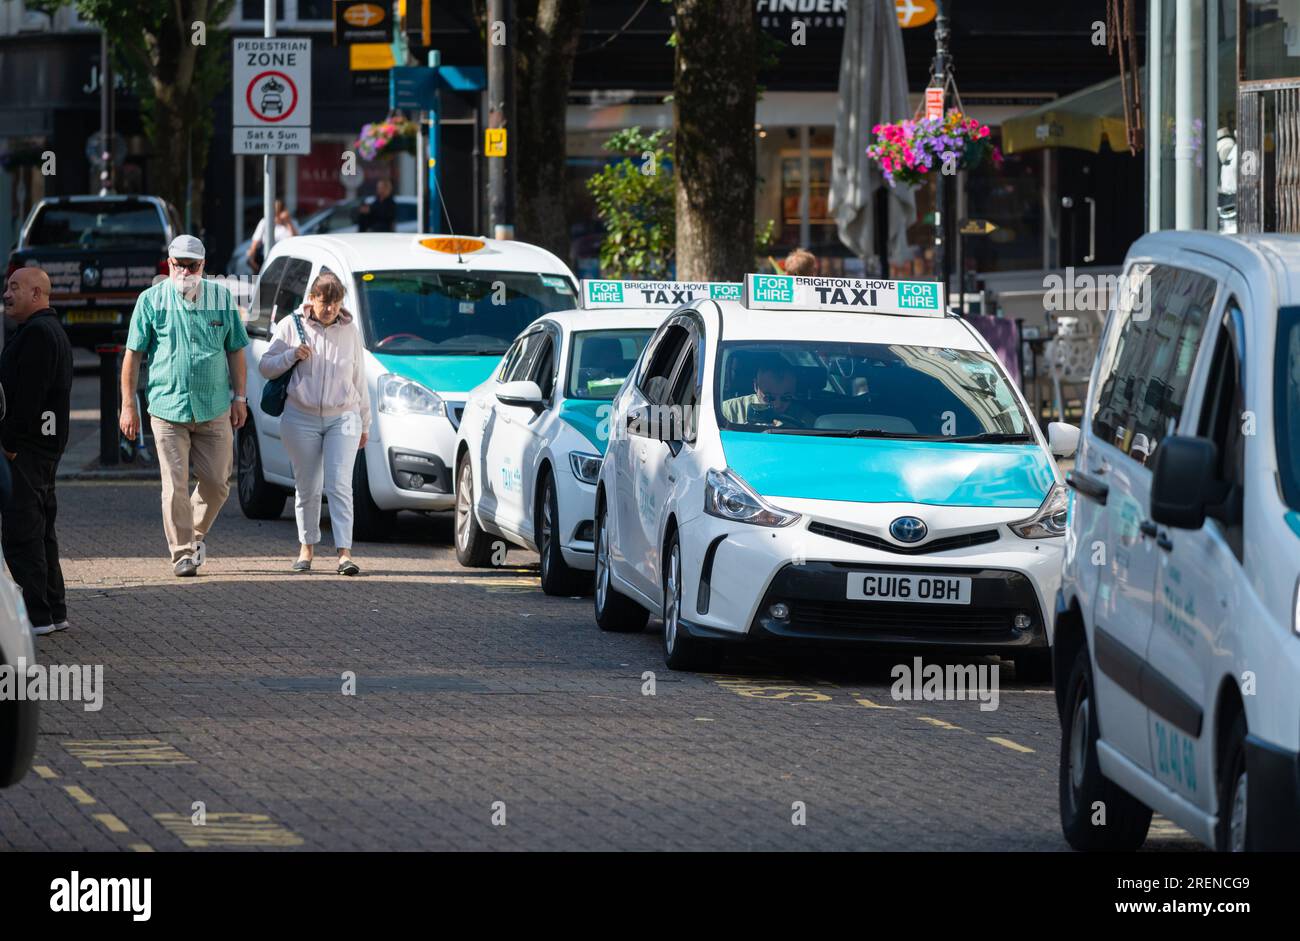 Posteggio dei taxi o posteggio dei taxi con taxi, nel centro di Brighton, Brighton e Hove, East Sussex, Inghilterra, Regno Unito. Foto Stock